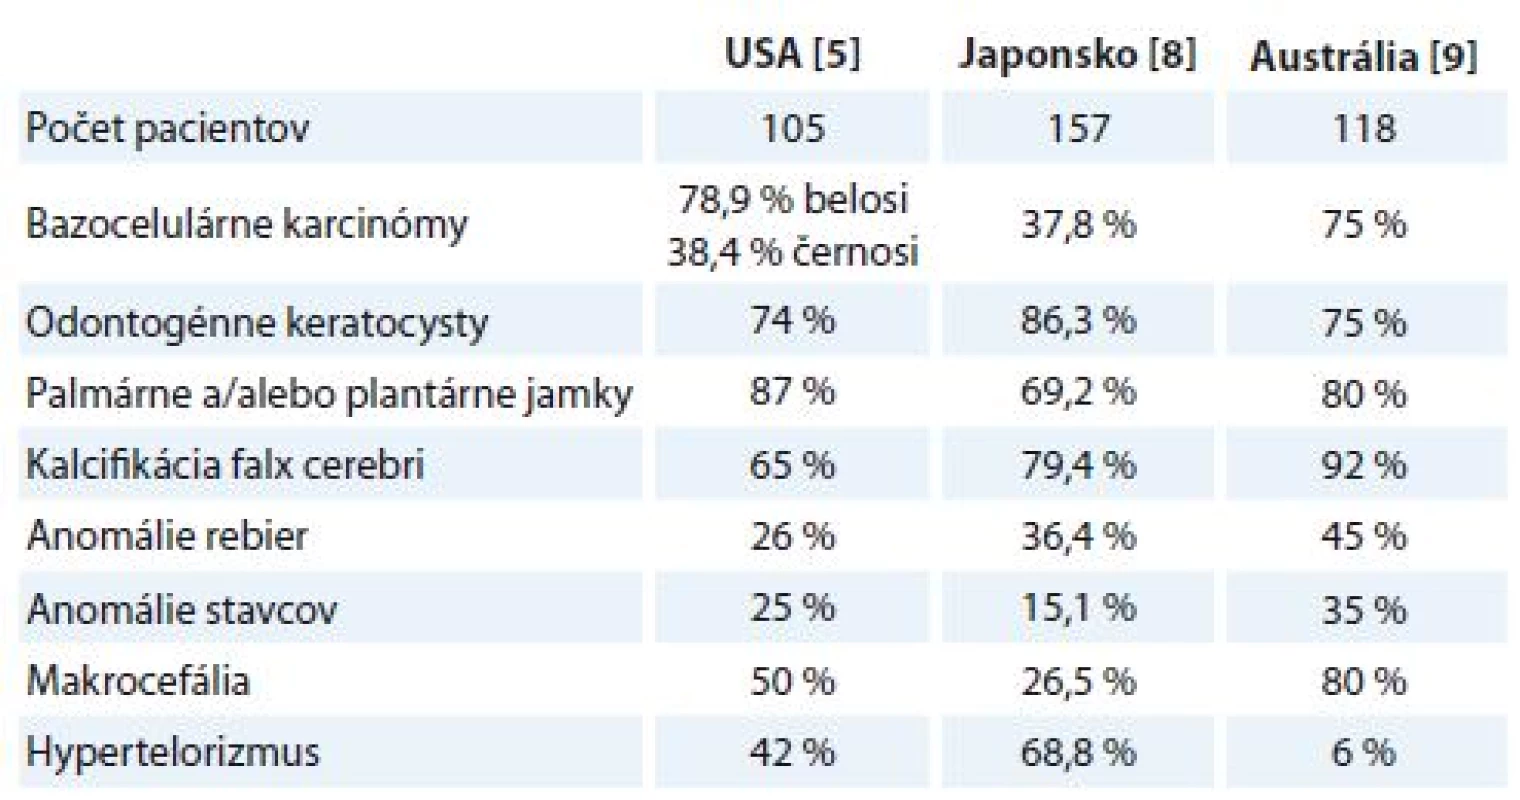 Percentuálne zastúpenie vybraných klinických znakov u pacientov s Gorlinom-
Goltzovom syndrómom v štúdii z USA, Japonska a Austrálie.